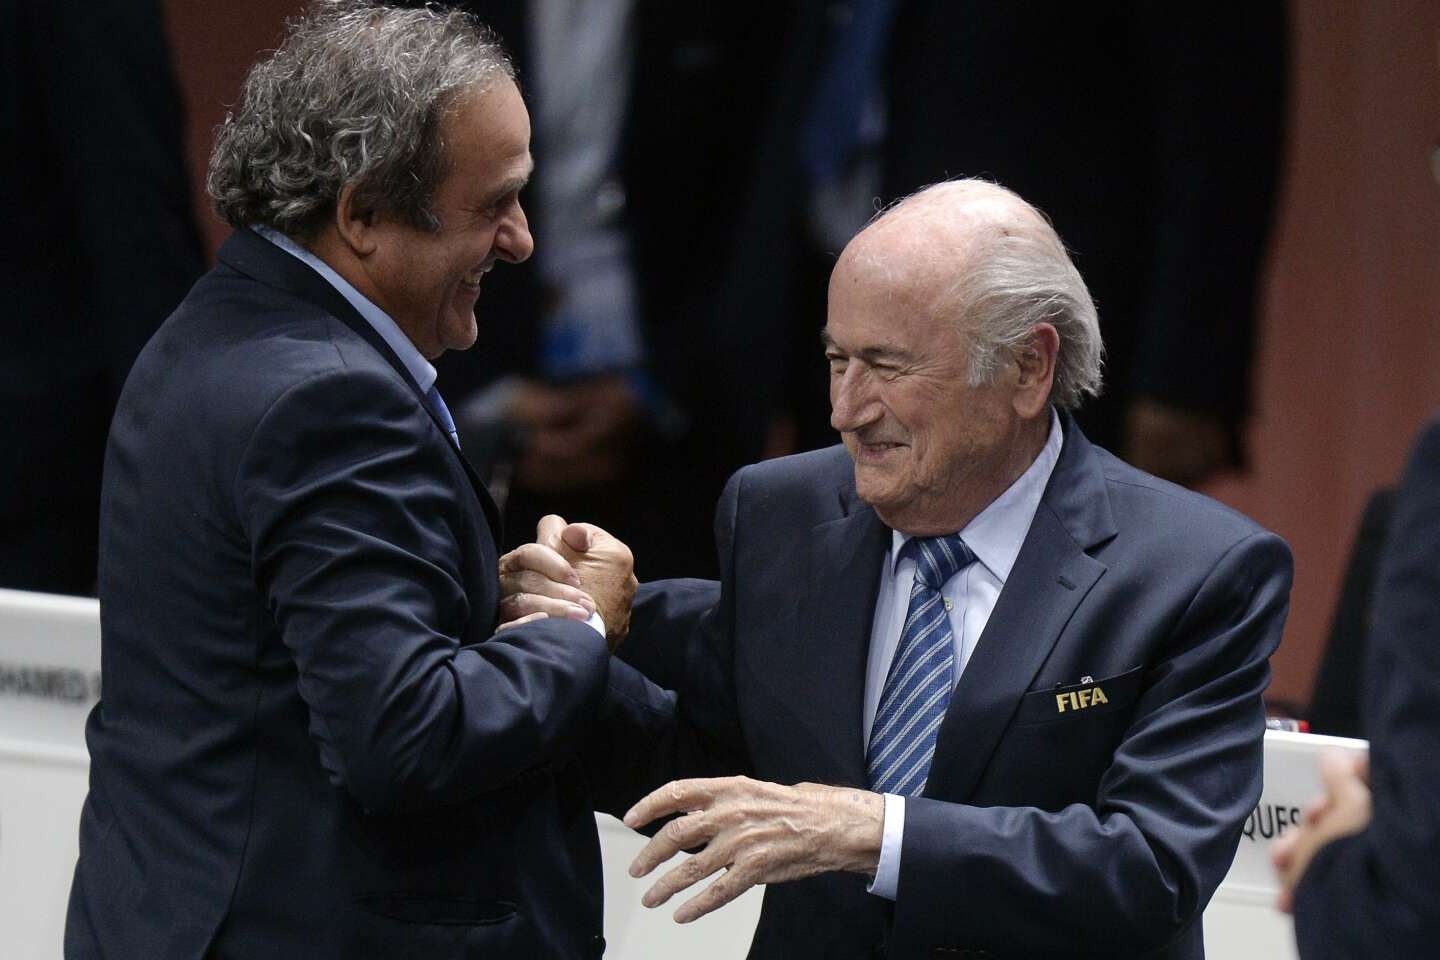 Affaire Blatter-Platini : le ministère public fait appel, un nouveau procès à l’horizon